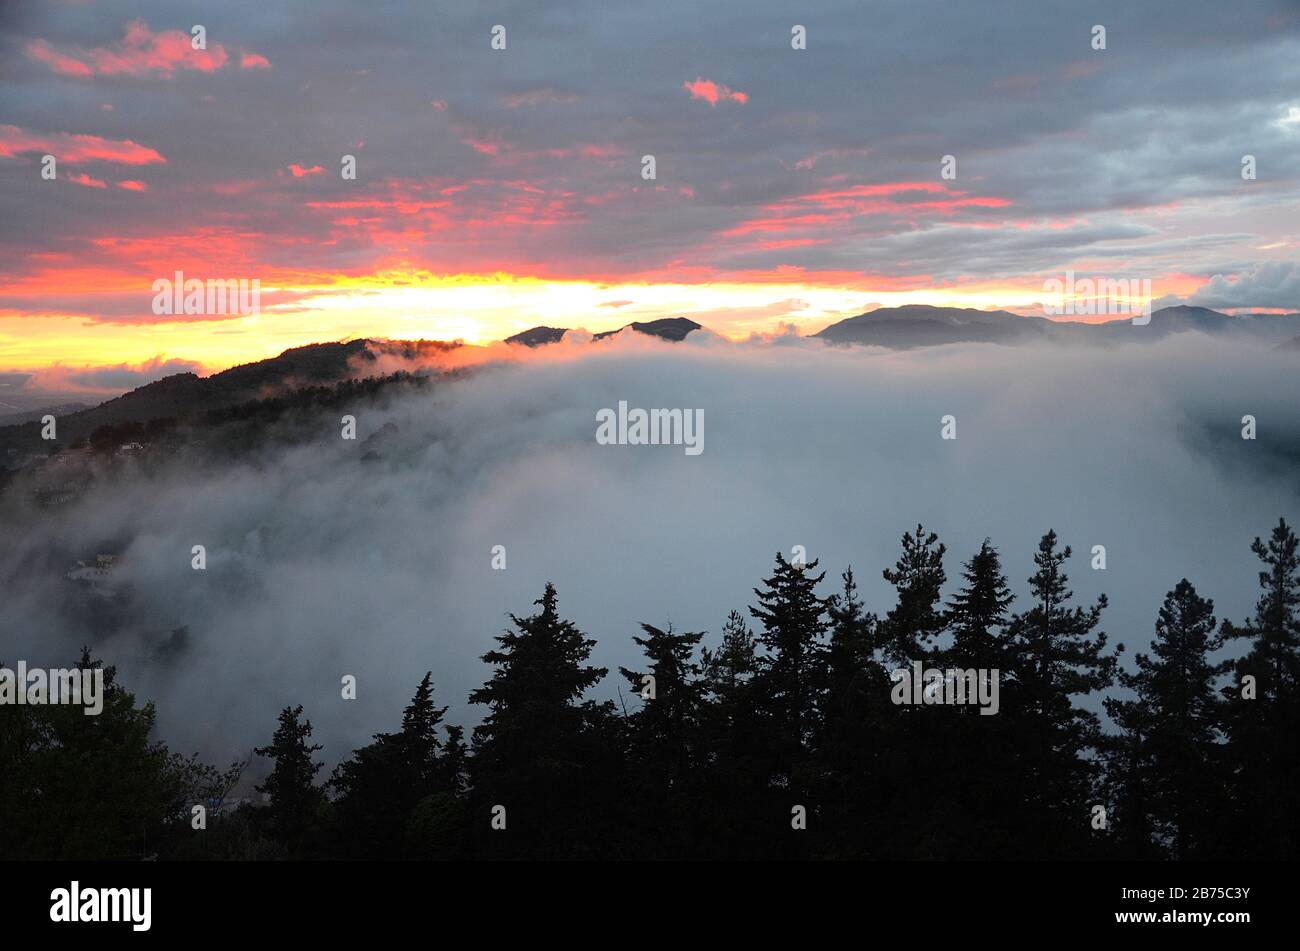 Italian sunsets: Fumone. Stock Photo